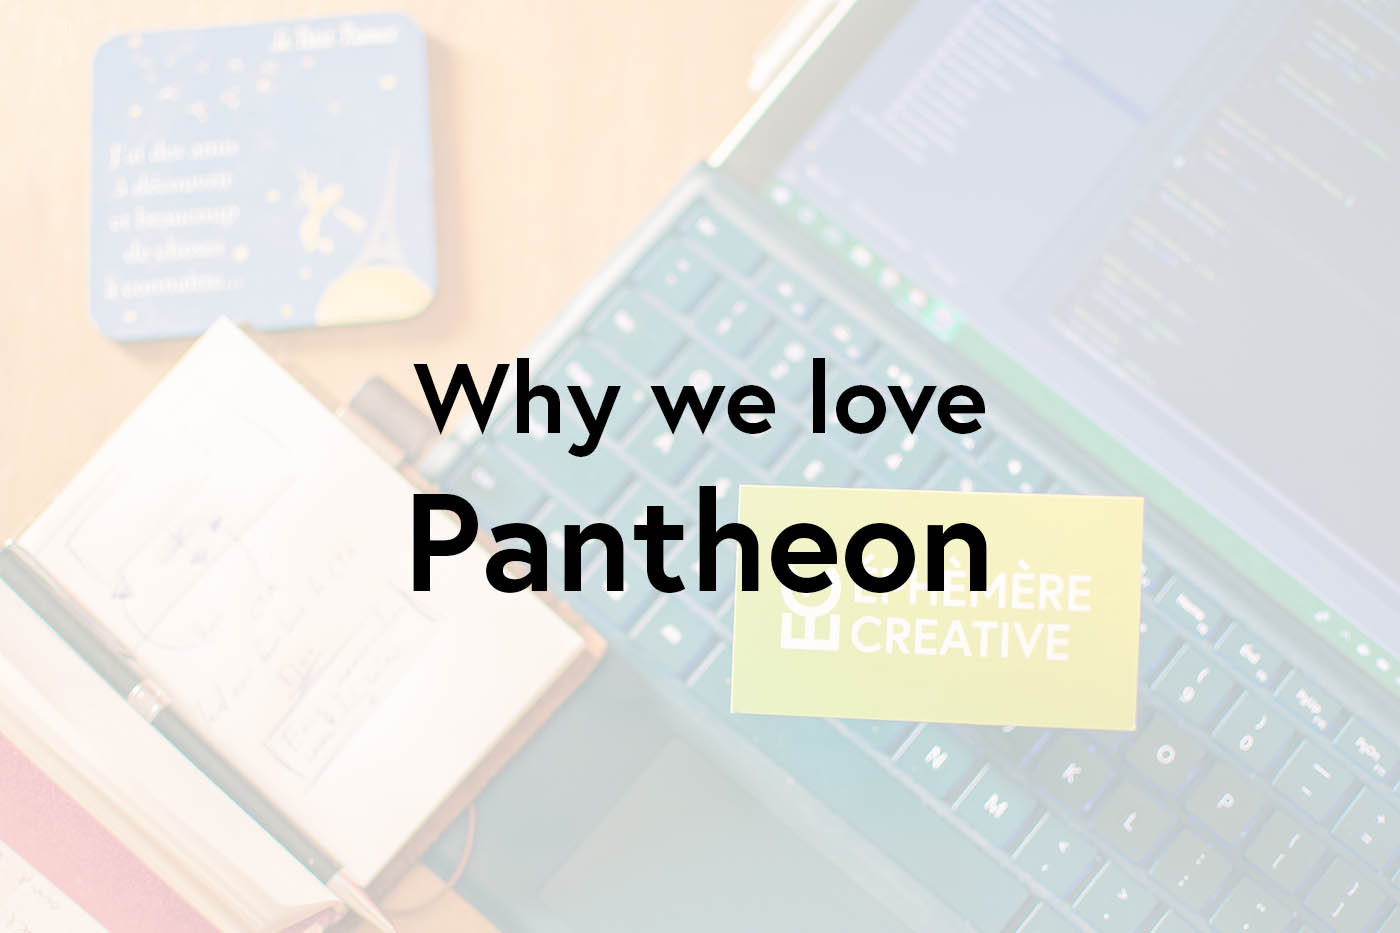 We love Pantheon WordPress hosting